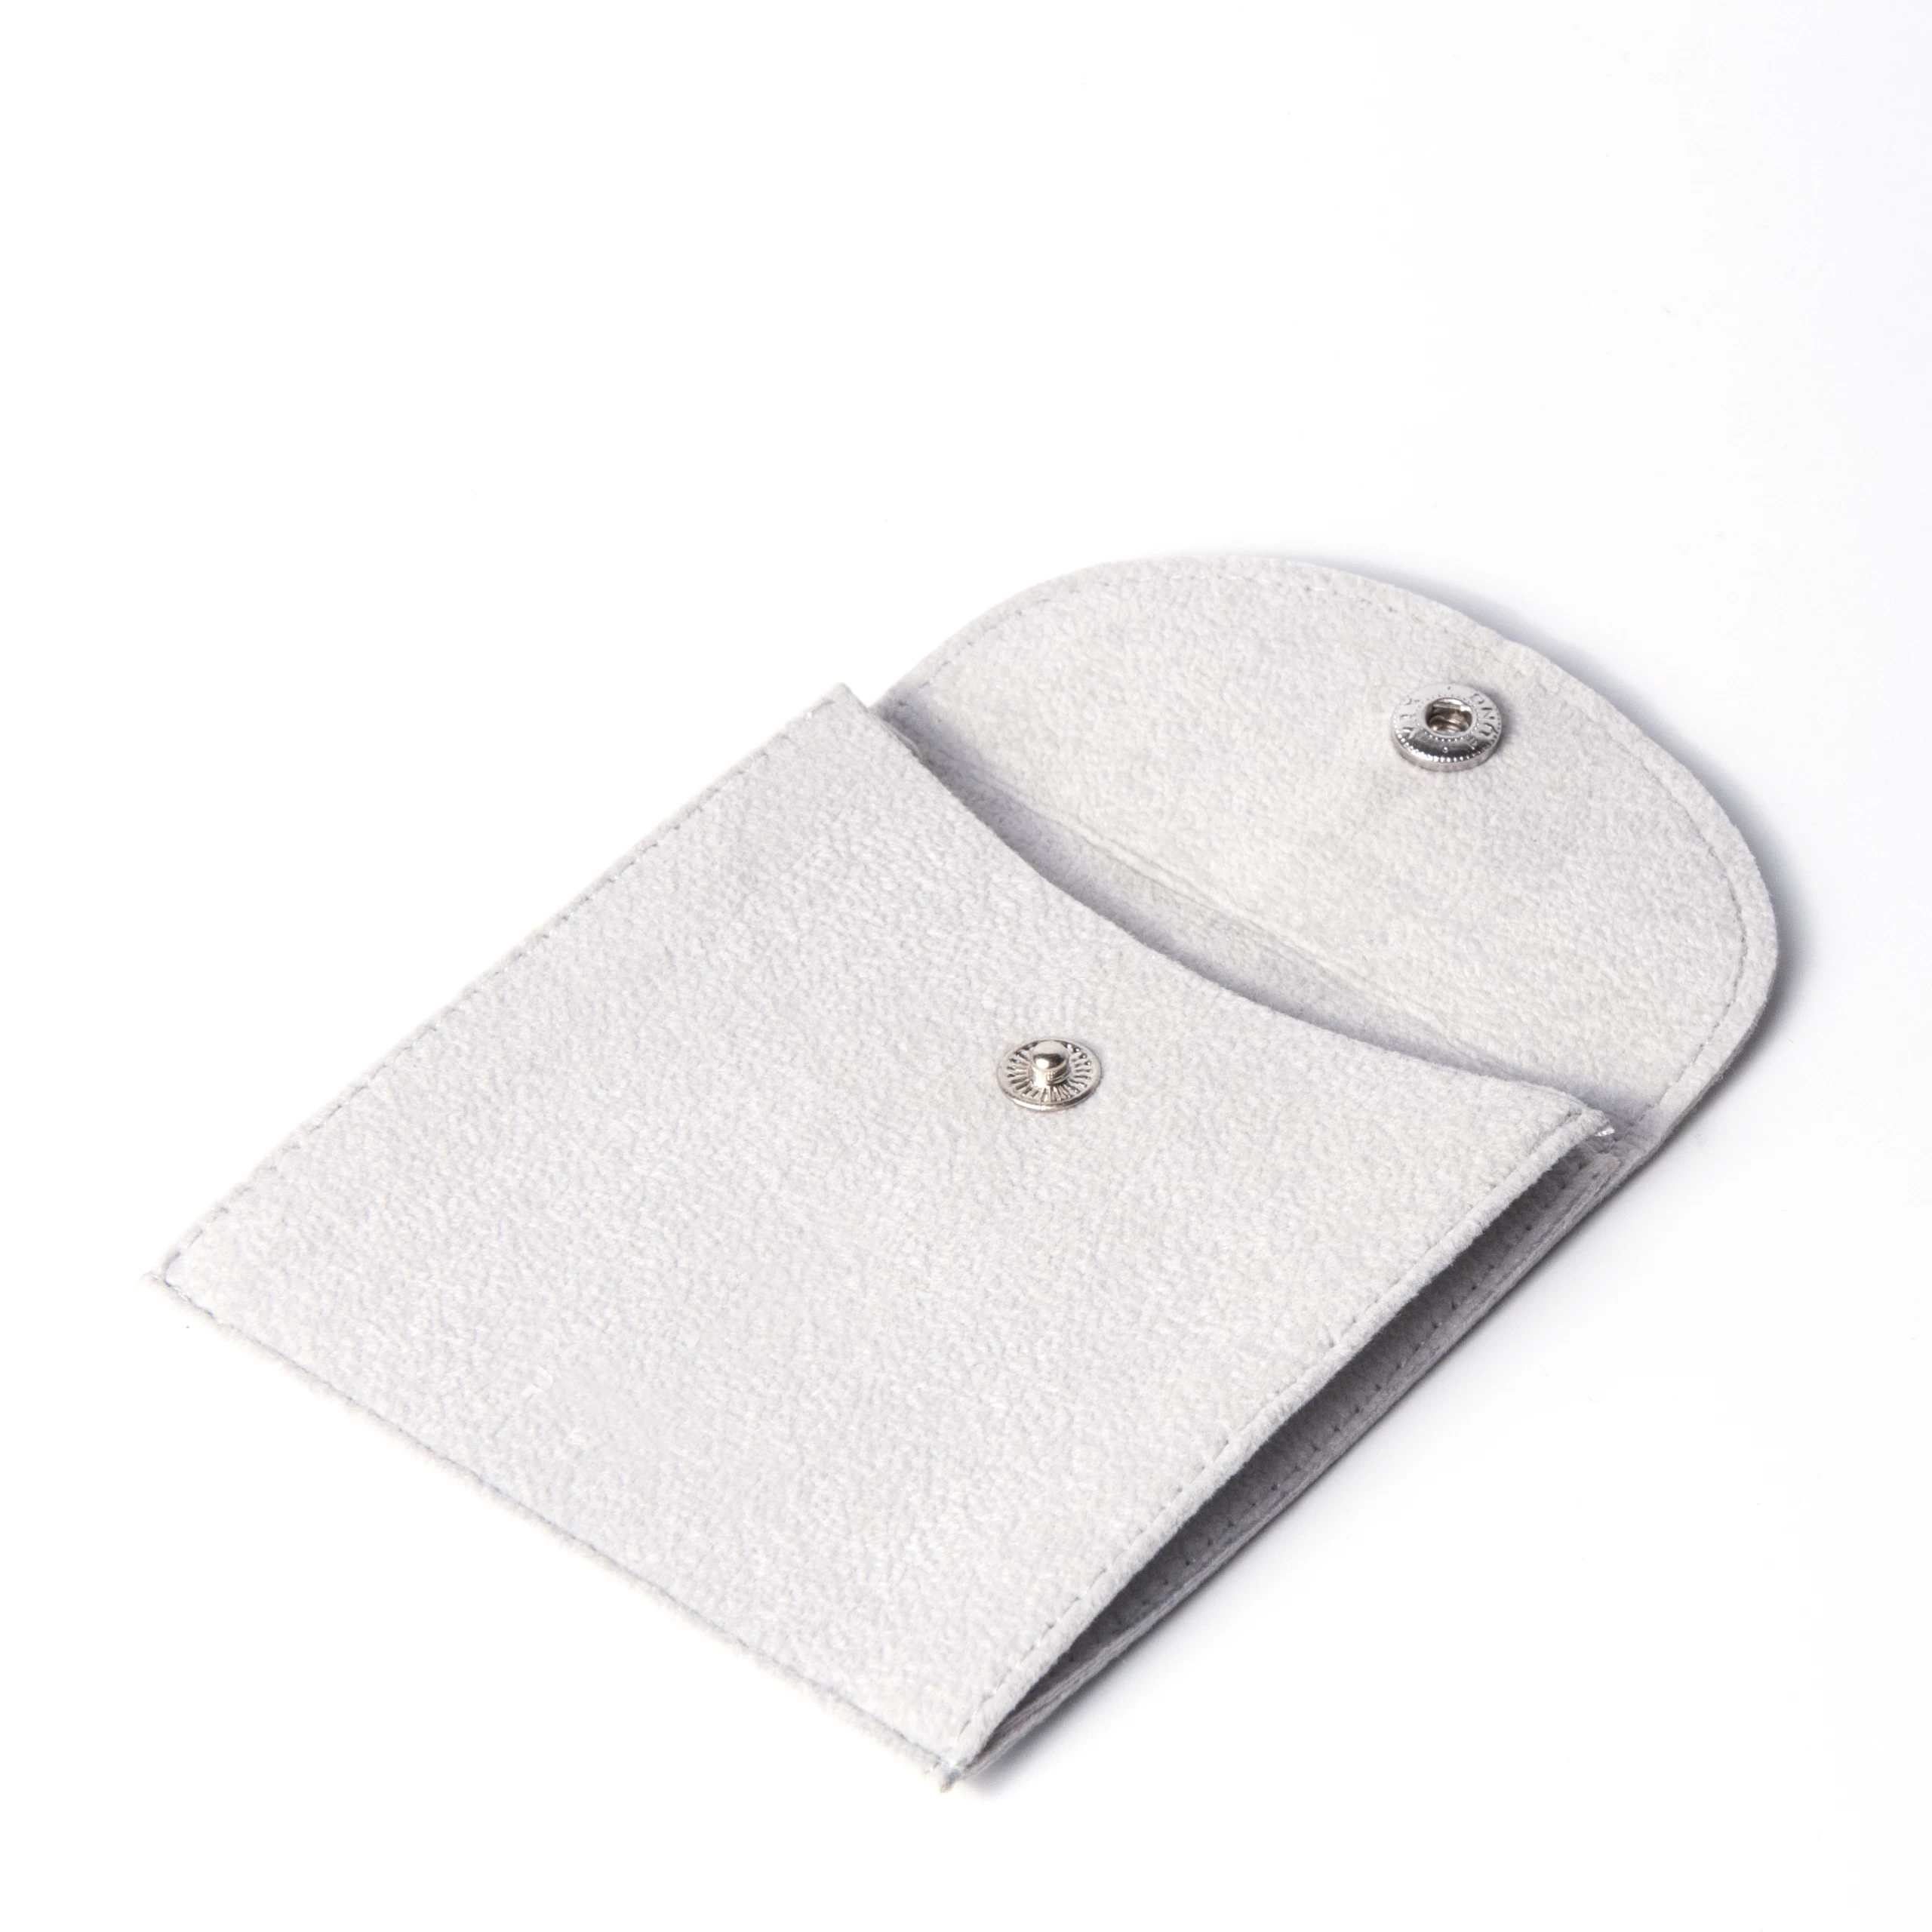 Yaodao Großhandel Geschenk Ohrring Halskette Verpackung Karten Display mit Logo-Einsatz Trennwand benutzerdefinierte Wildleder Samt Schmuckbeutel